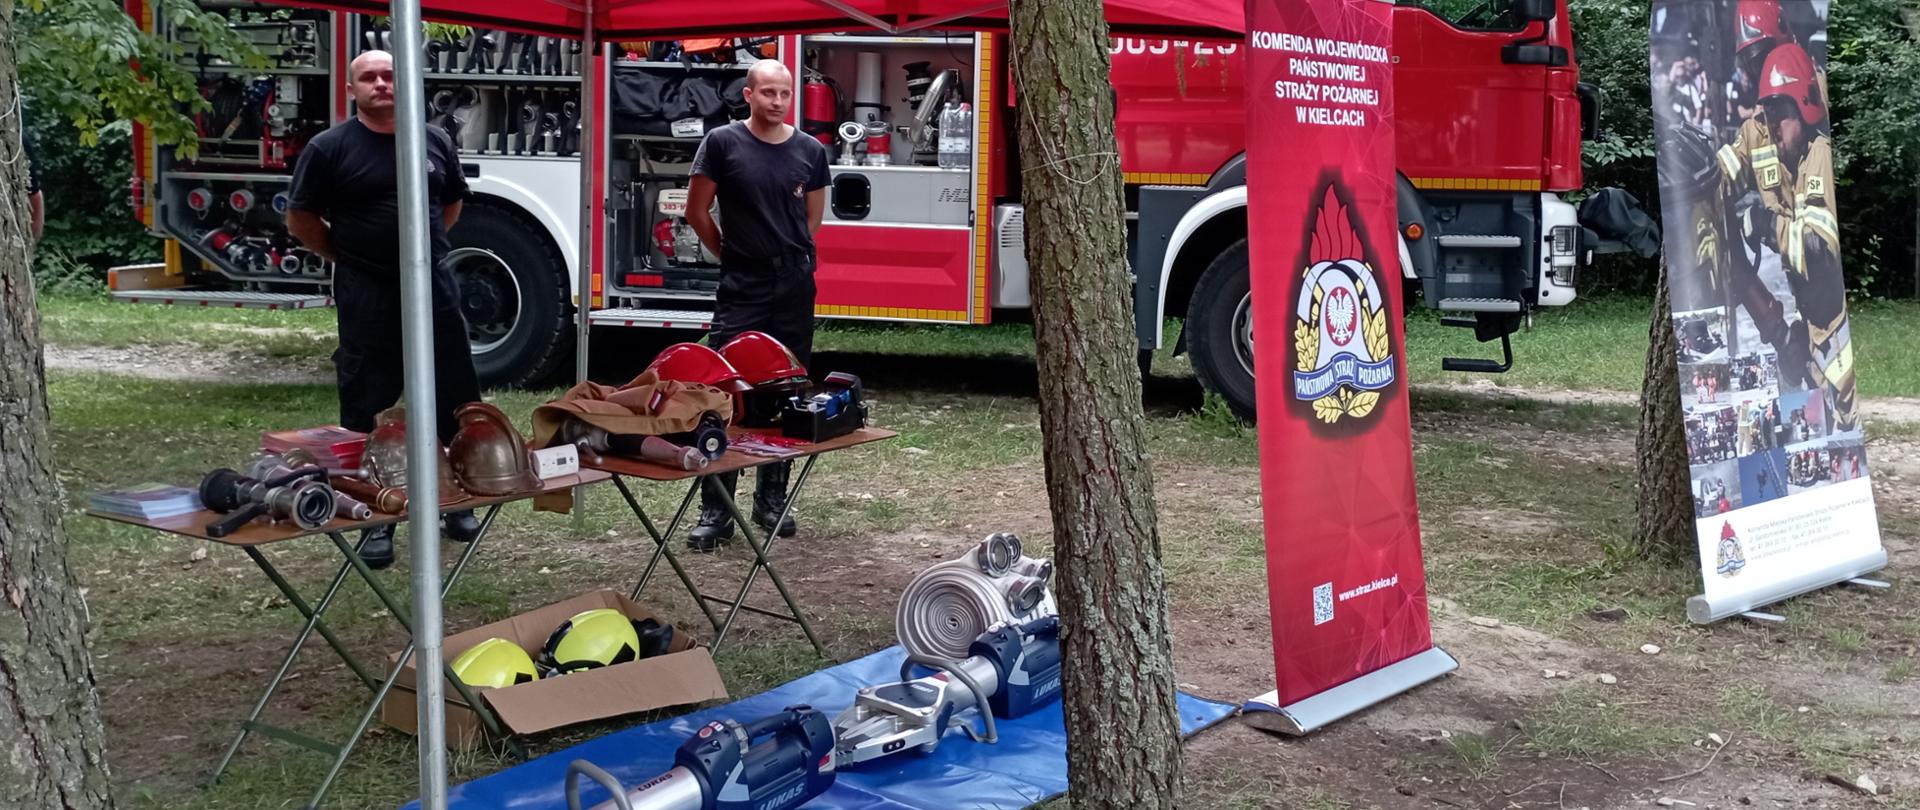 Zdjęcie przedstawia miejsce prezentacji sprzętu straży pożarnej. Na pierwszym planie stoisko z prezentowanym sprzętem pożarniczym a za nim stoi samochód strażacki.